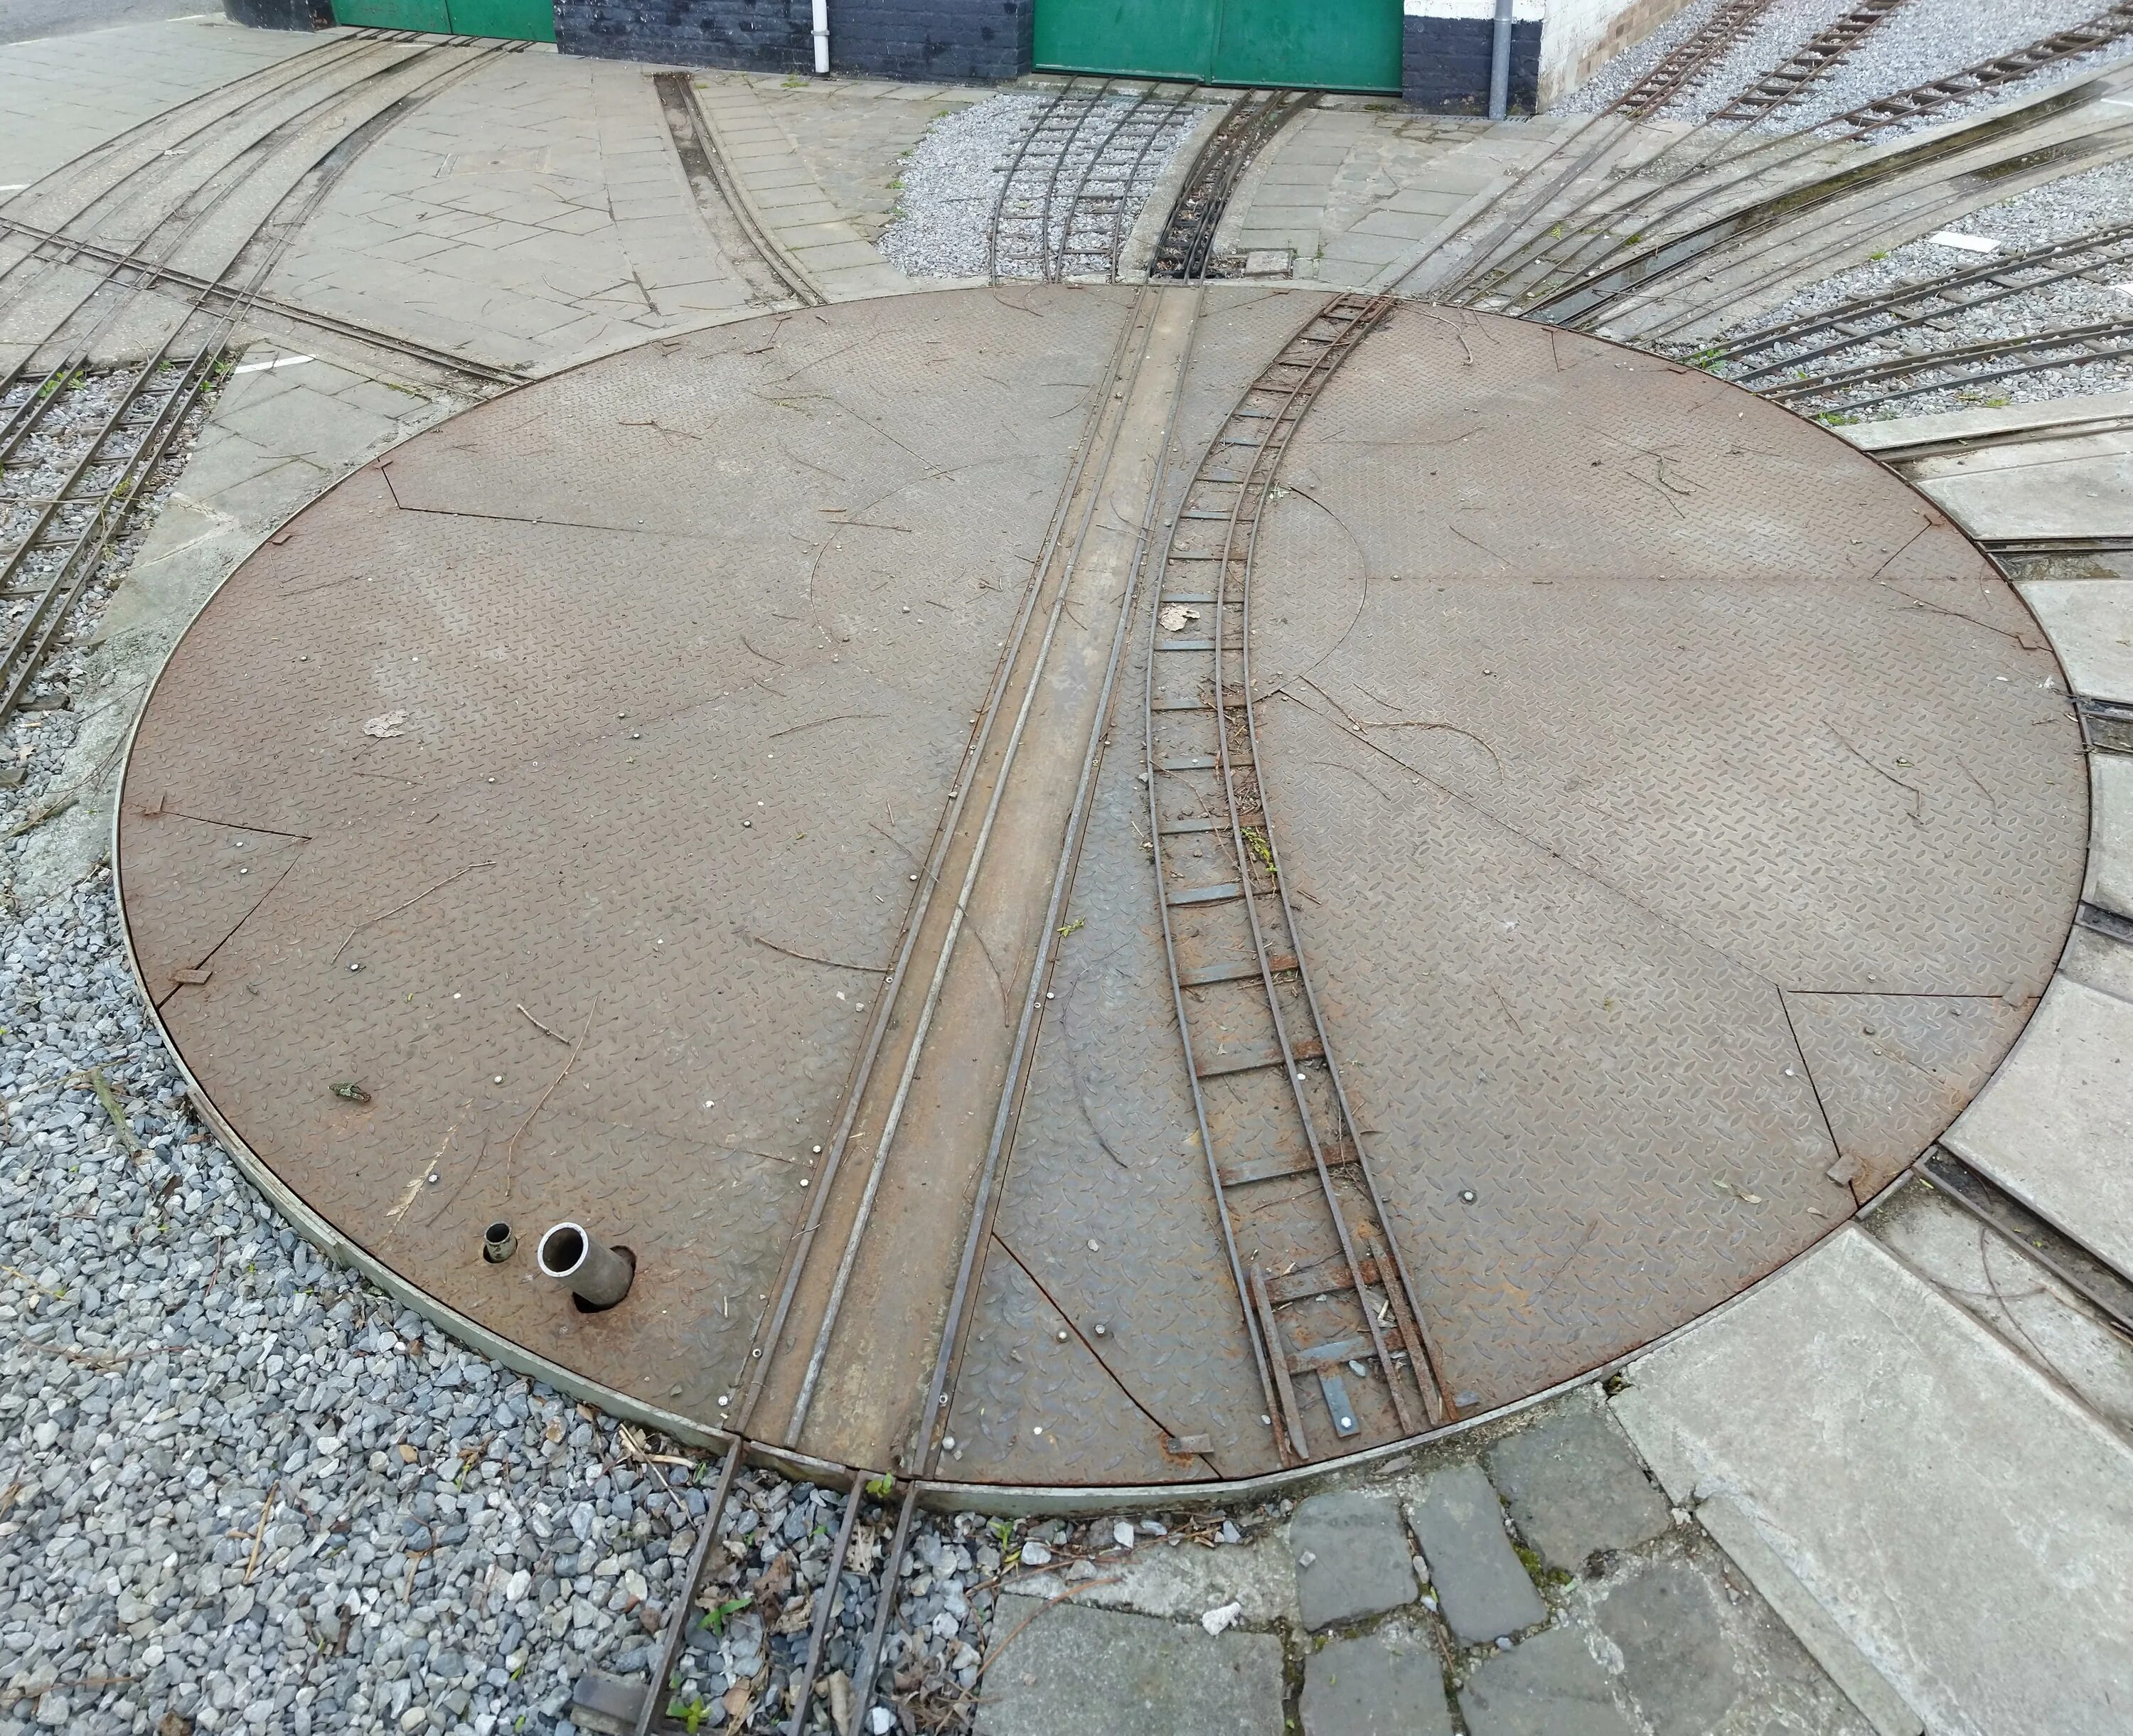 Поворотный круг Железнодорожный. Фуражир ФН-1 поворотный круг. Поворотный круг для локомотивов. Поворотный круг сцены.